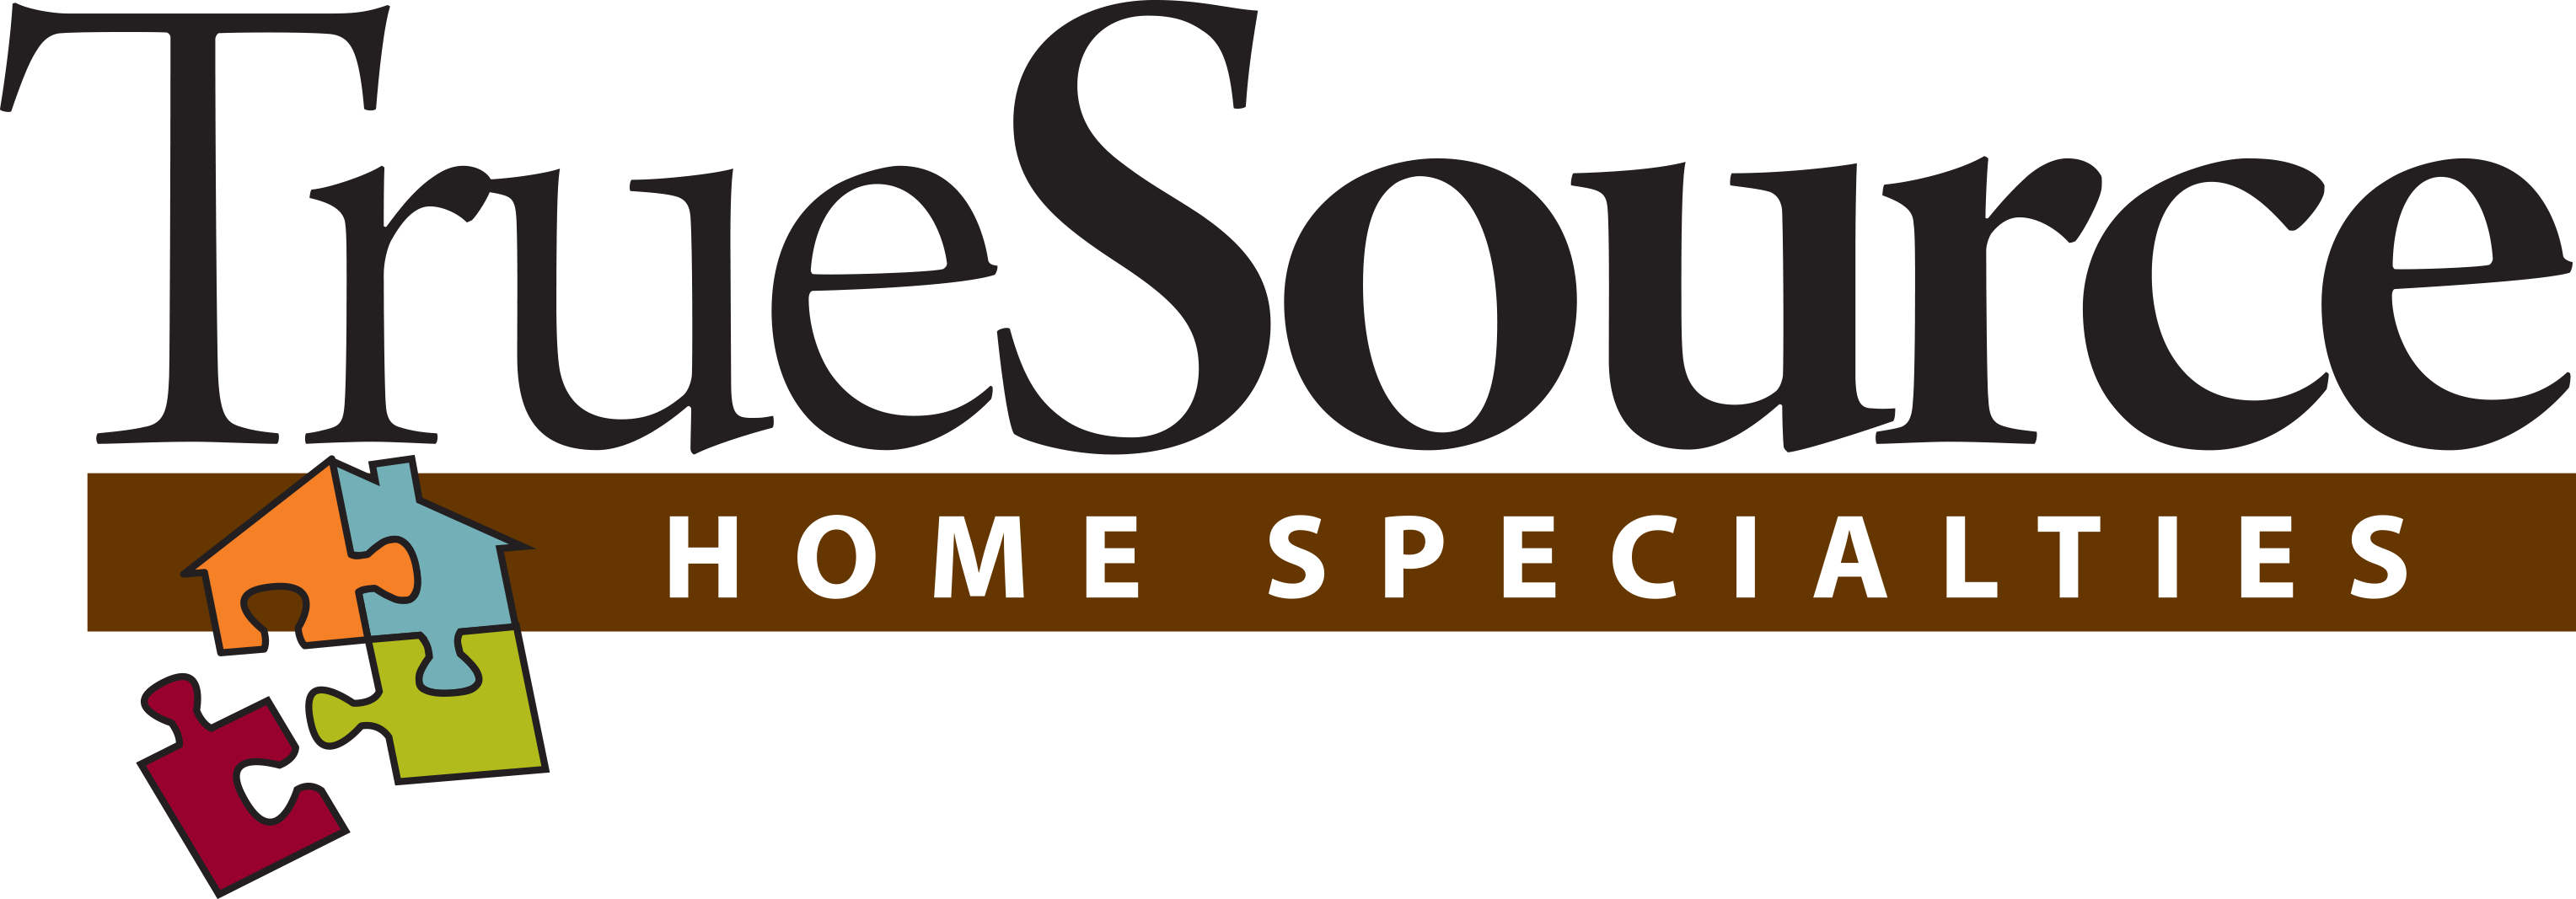 TrueSource Home Specialties Logo